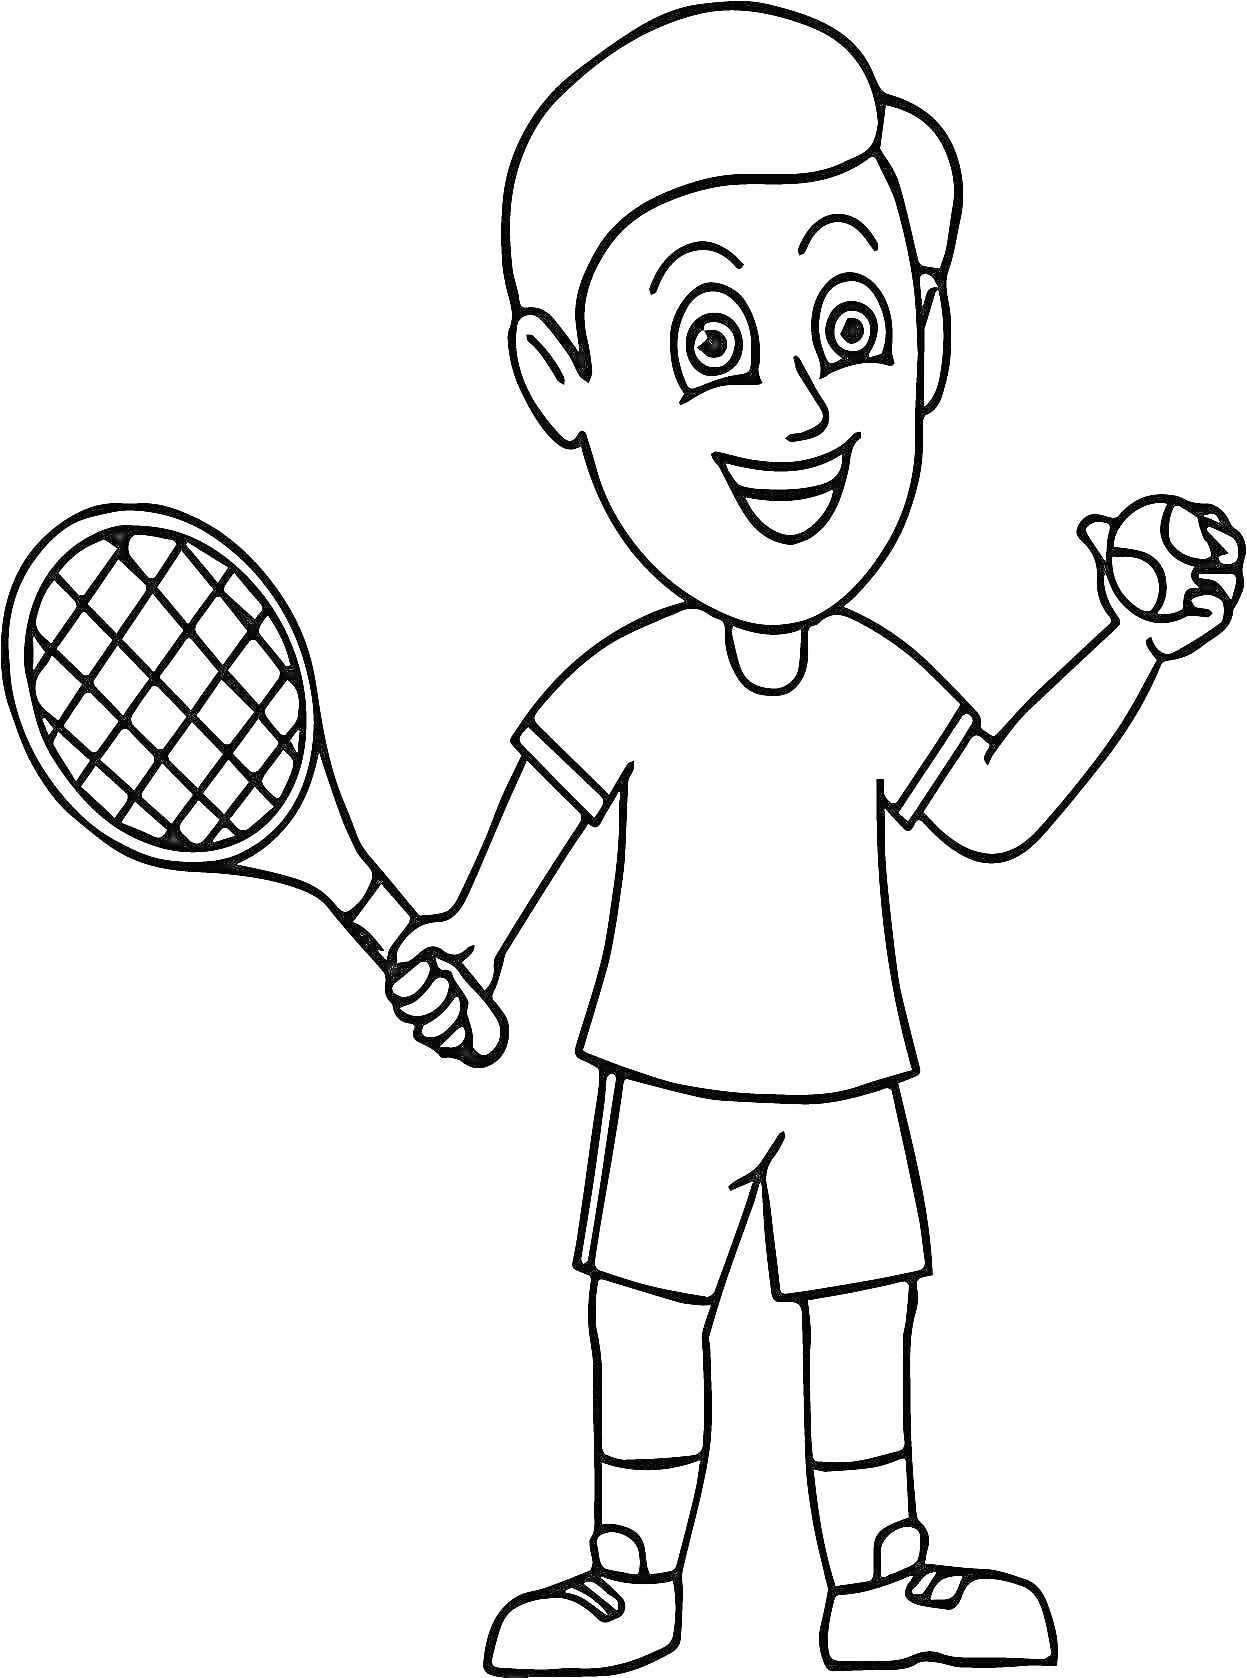 Мальчик, держащий теннисную ракетку и теннисный мяч.